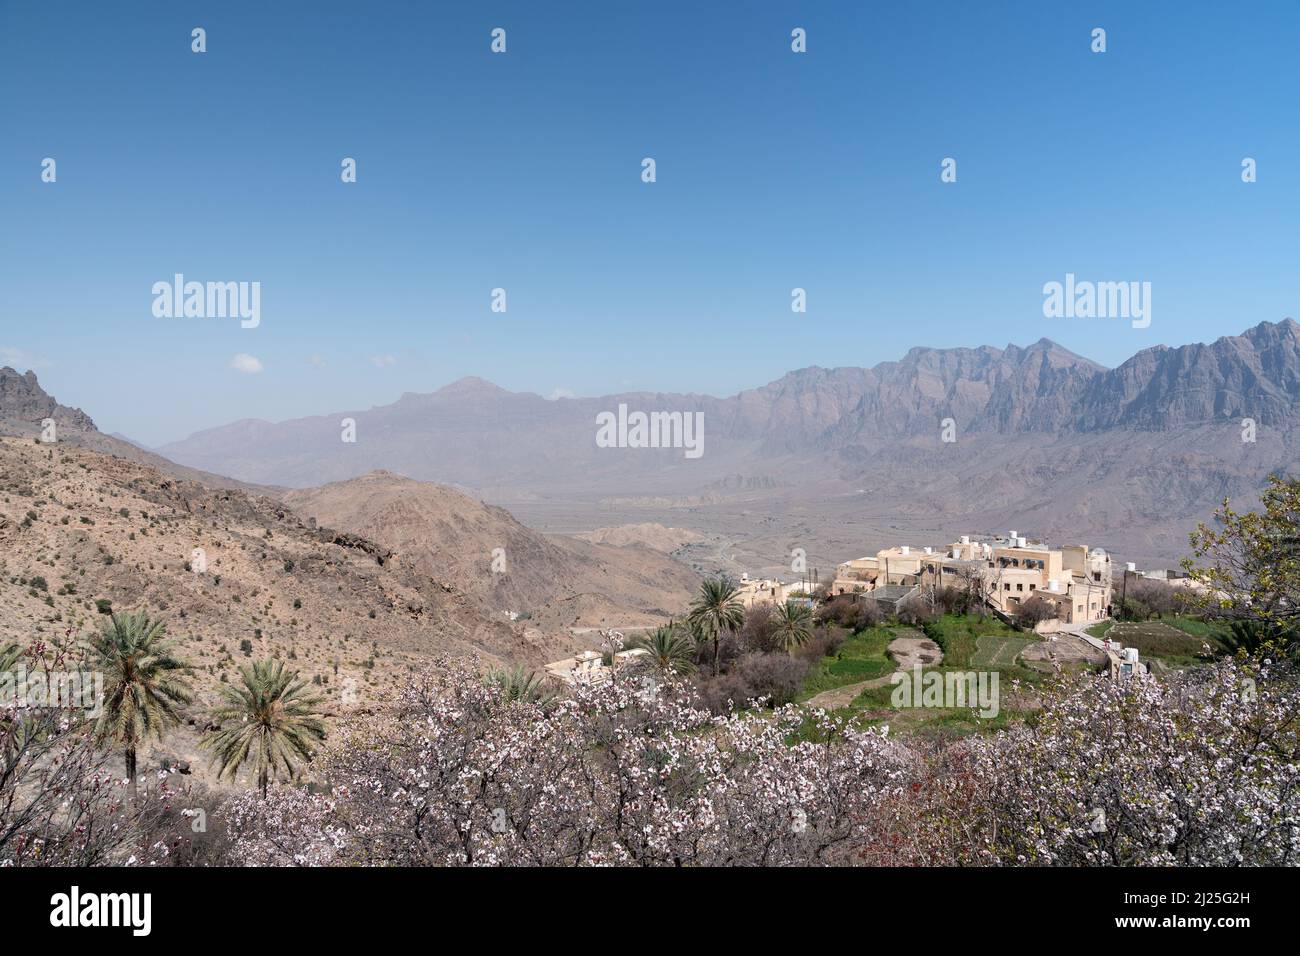 Blick auf das traditionelle omanische Dorf Wakan, mit Blick auf die Gubrah Bowl und die Hajar Mountains, von einer blühenden und palmengefüllten Plantage aus gesehen Stockfoto